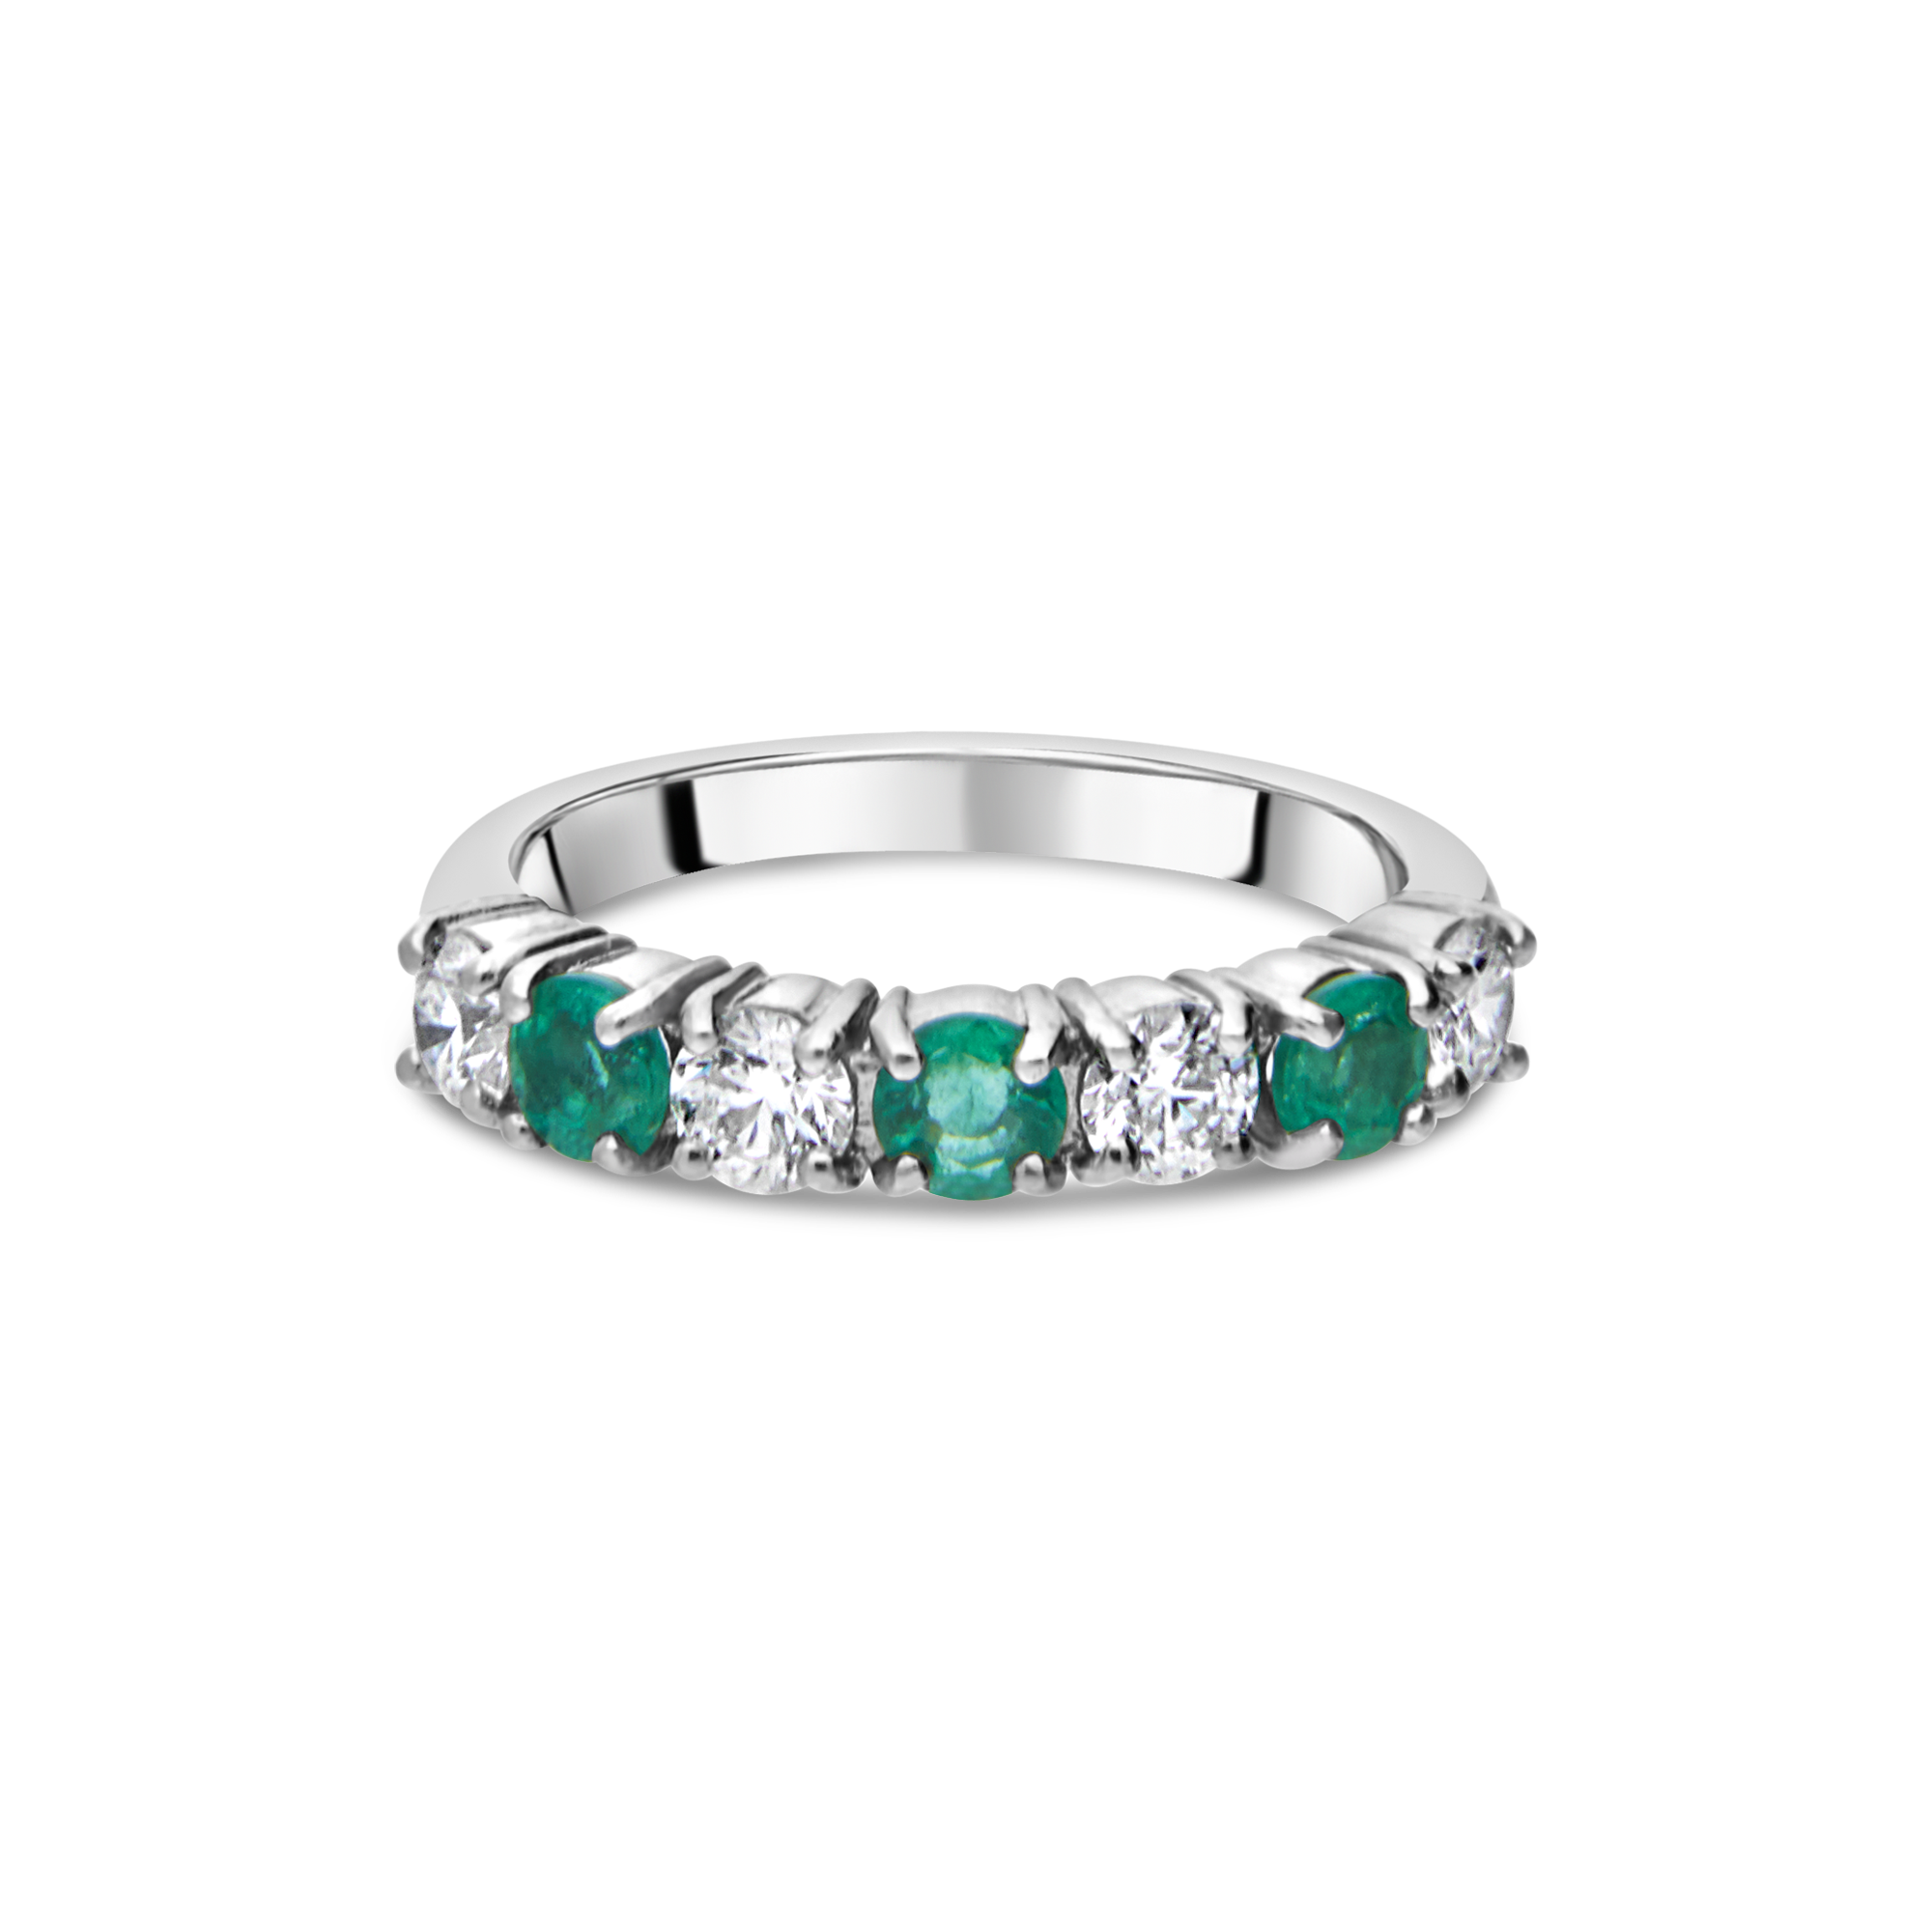 The "Galeria" Emerald and Diamond 7 Stone, Platinum